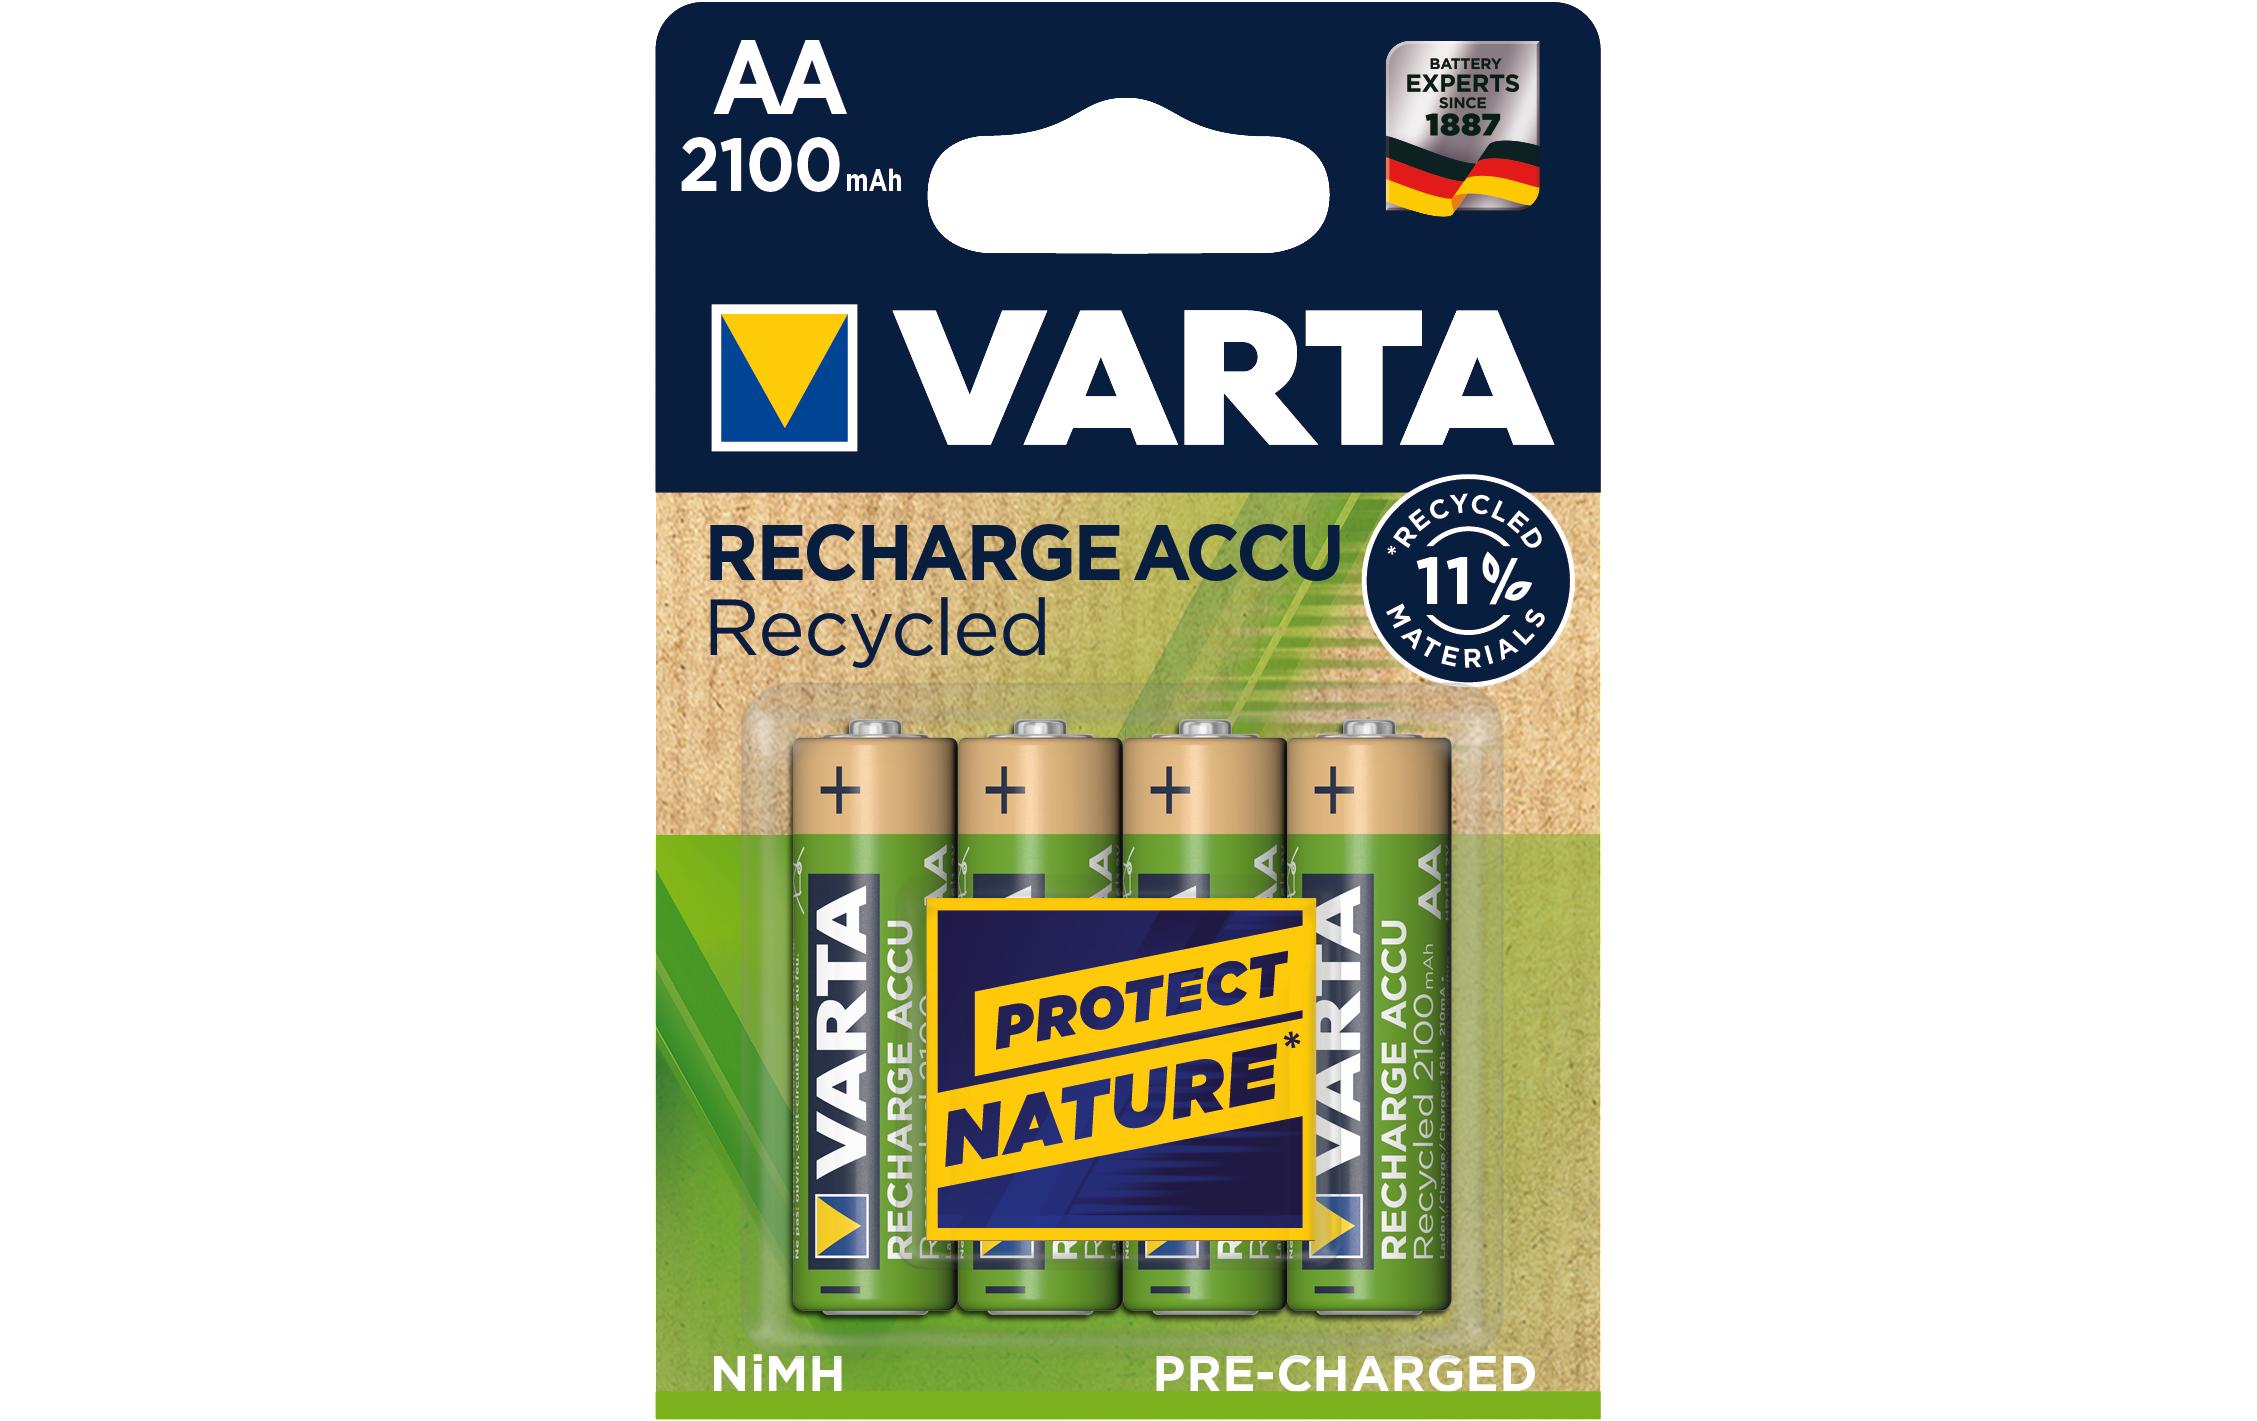 Varta Akku Recharge Accu Recycled AA 2100 mAh 2100 mAh